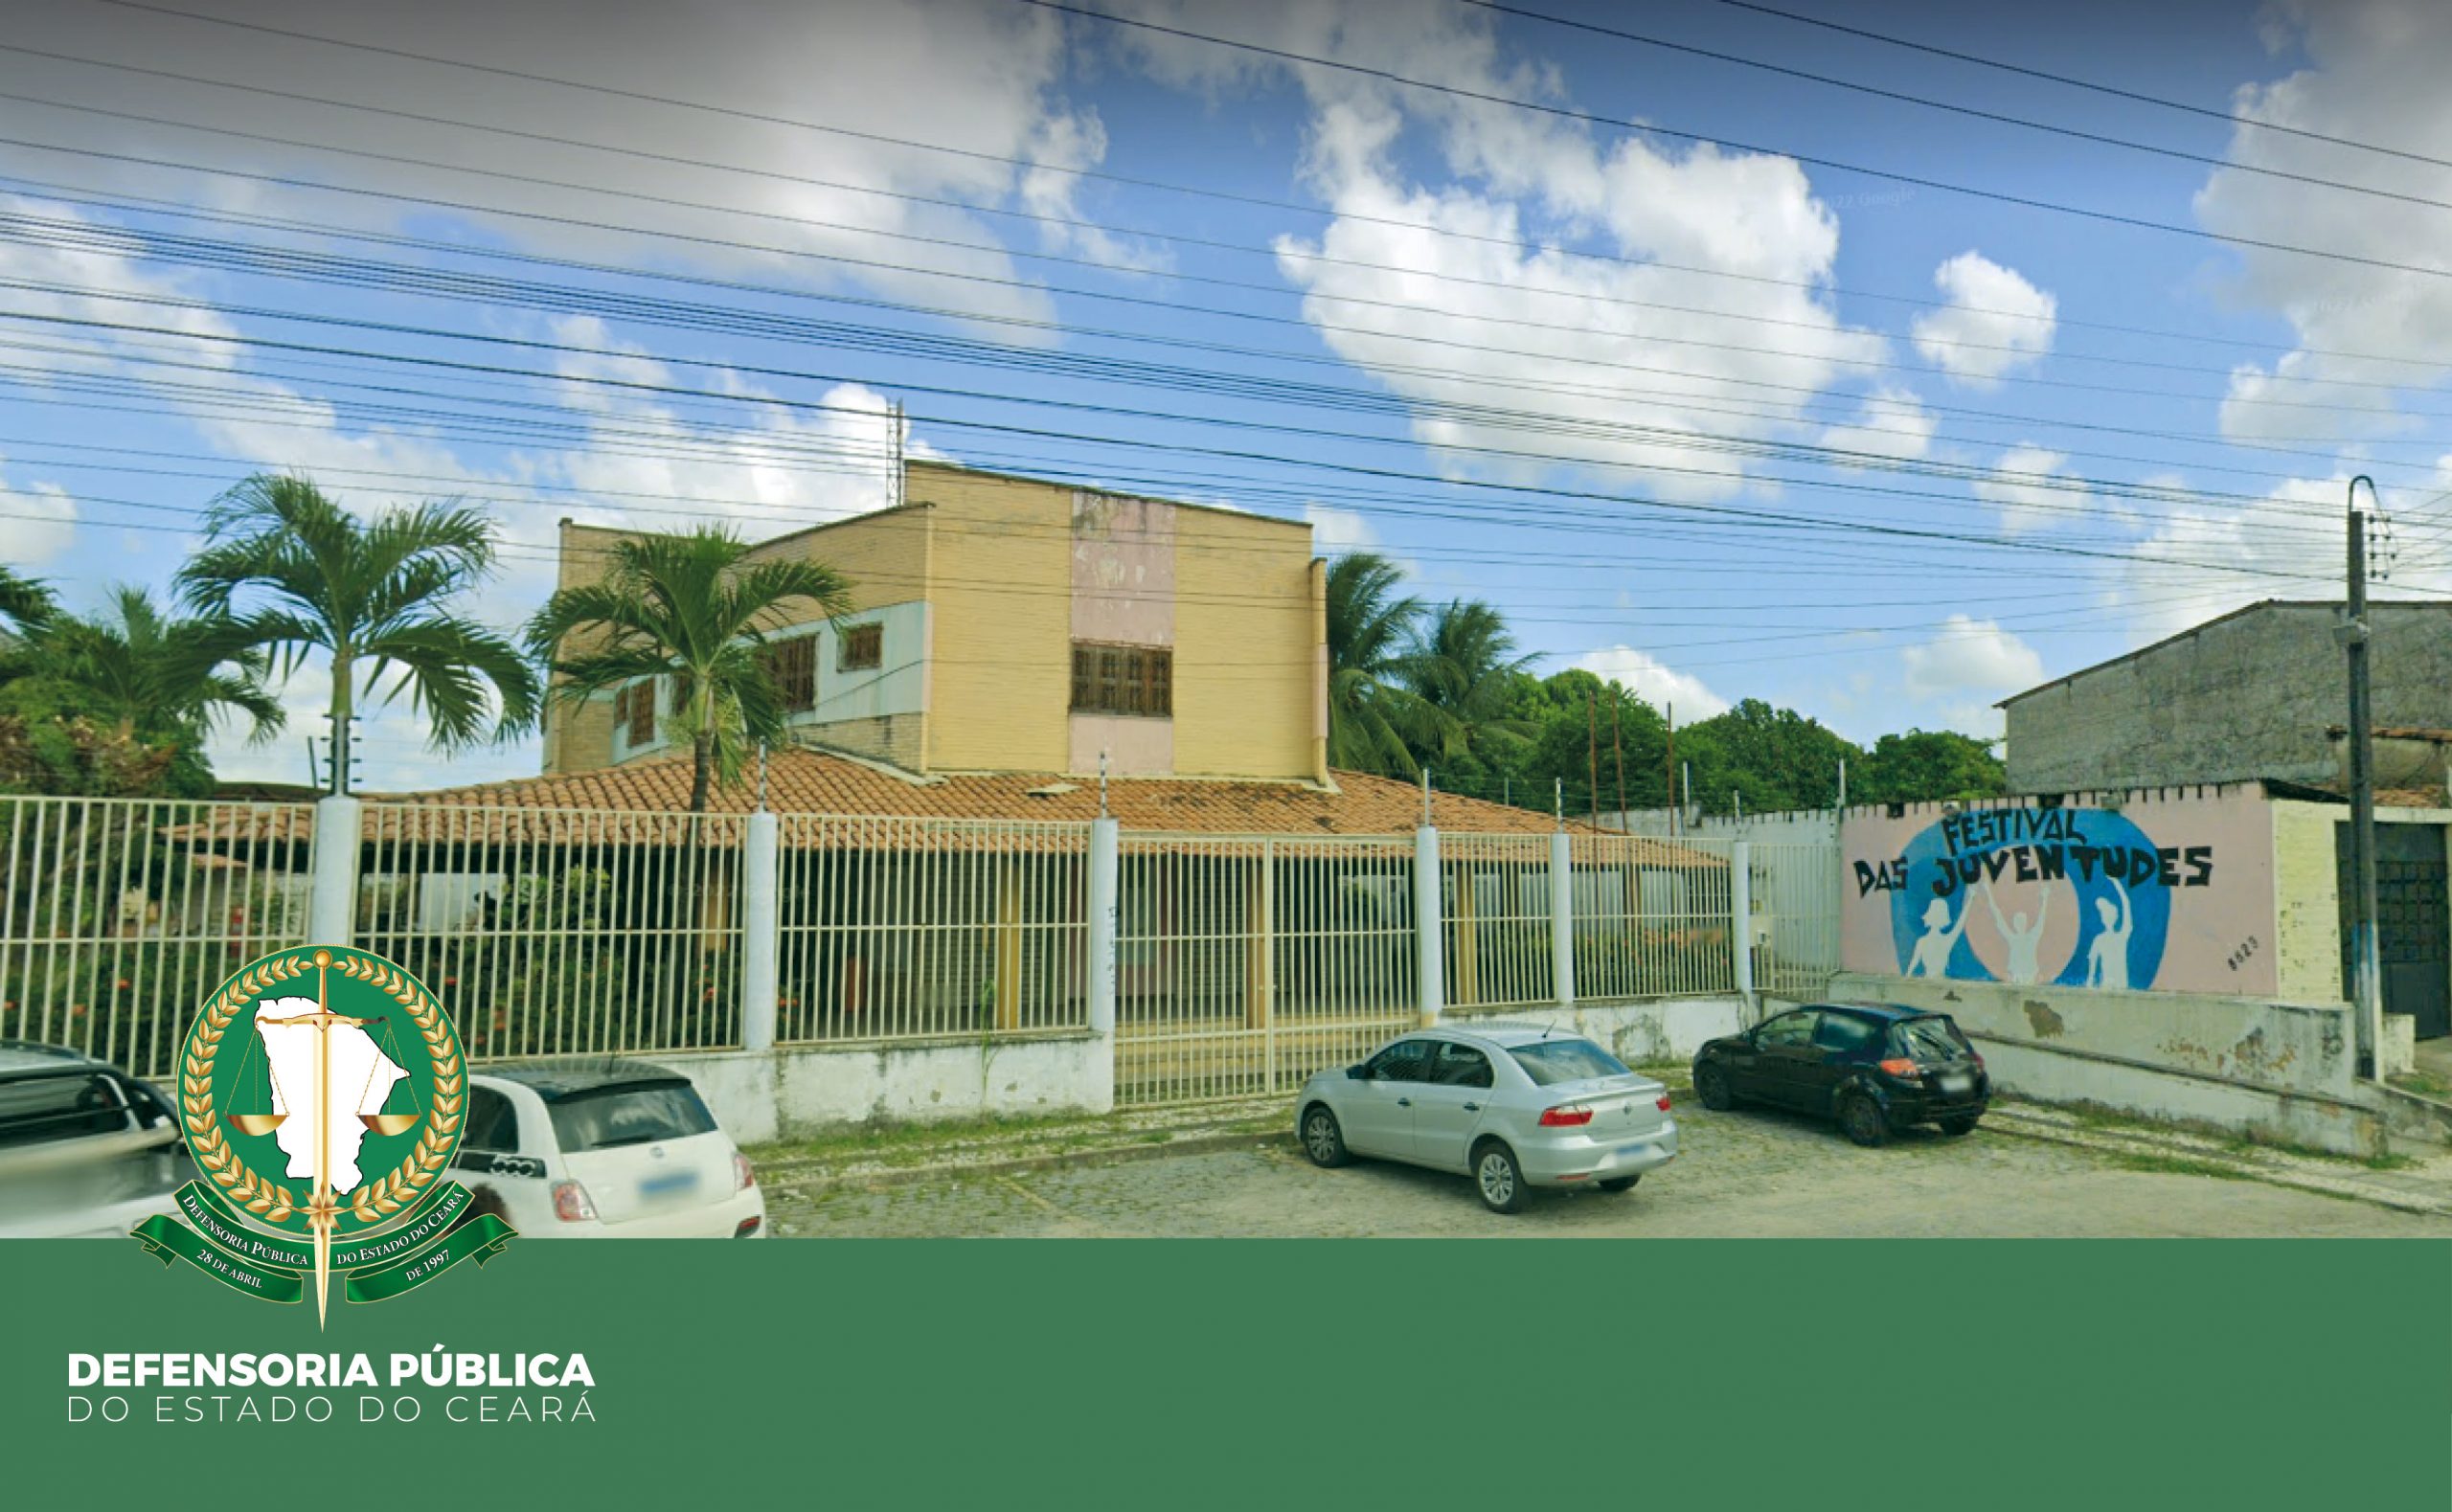 Defensoria Pública inicia atendimentos no Grande Bom Jardim, em Fortaleza –  Defensoria Pública do Estado do Ceará